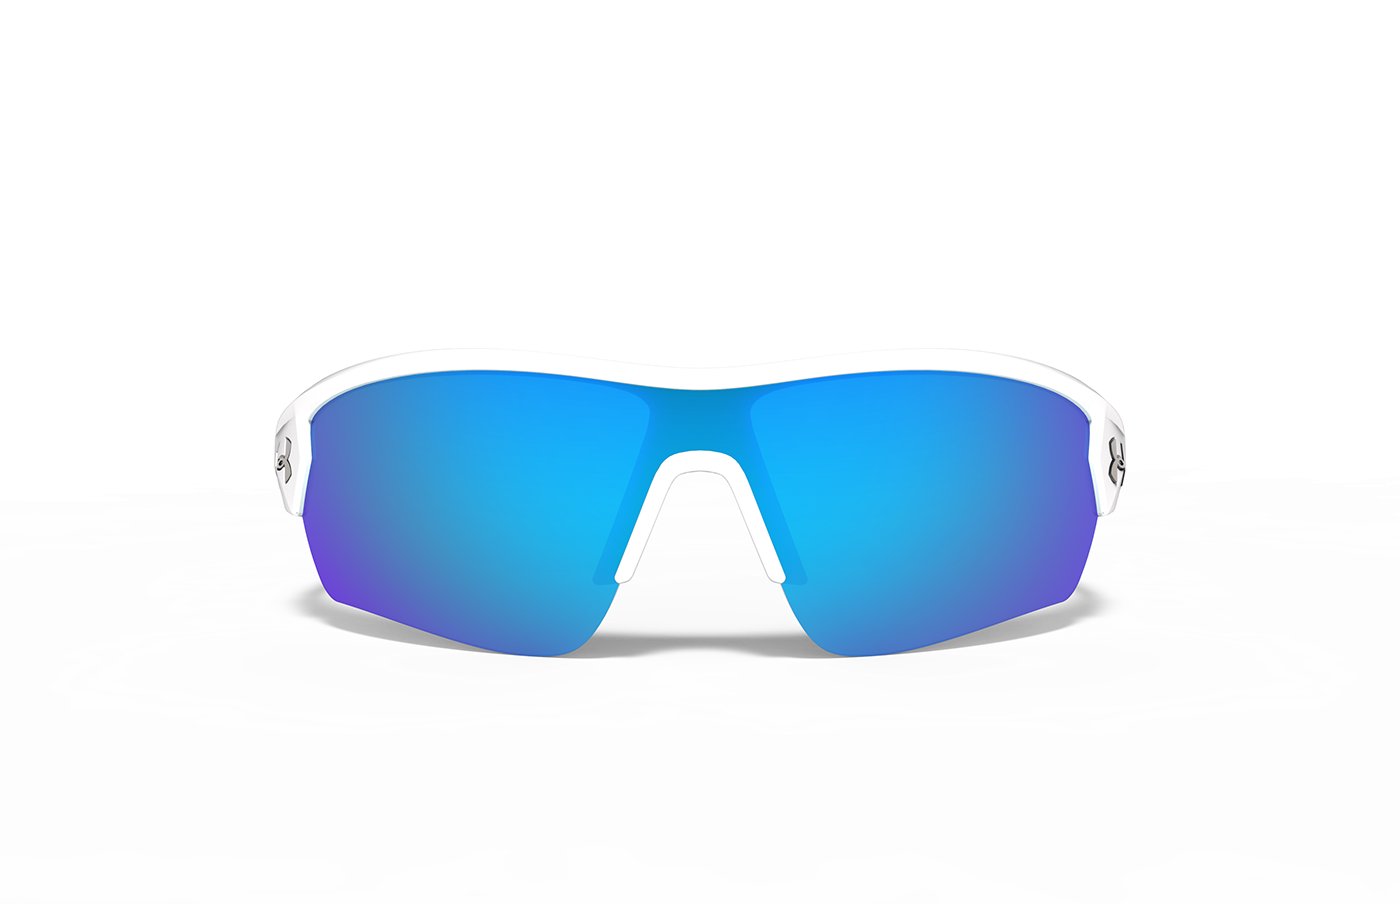 Sunglasses sunglass eyewear optics grip Technology sunnies sport